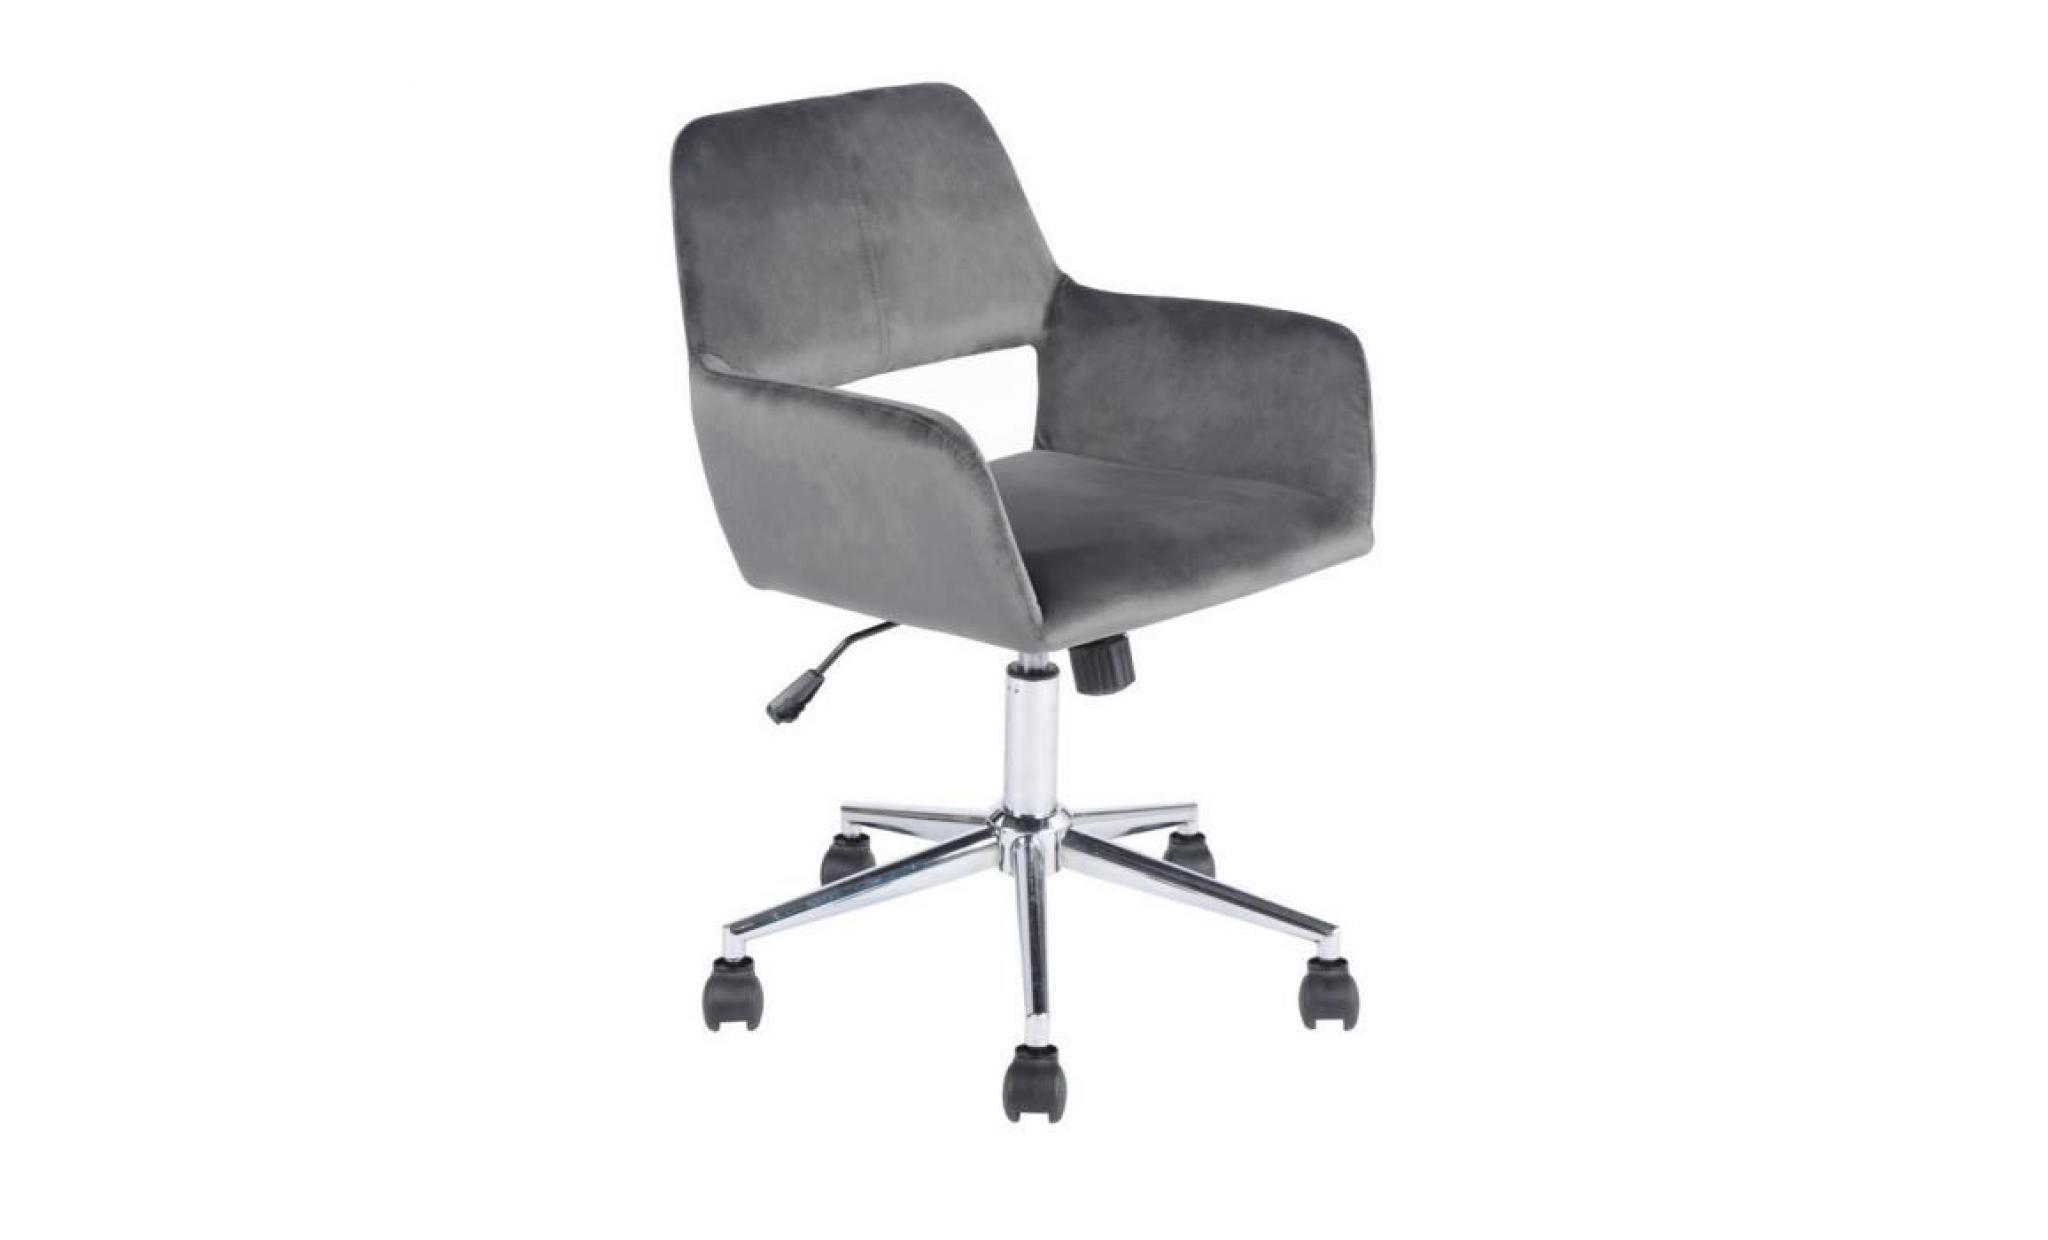 furnish1 computer velvet chair chaise de bureau contemporaine réglage de la hauteur jambes chromées chaise d'ordinateur gris